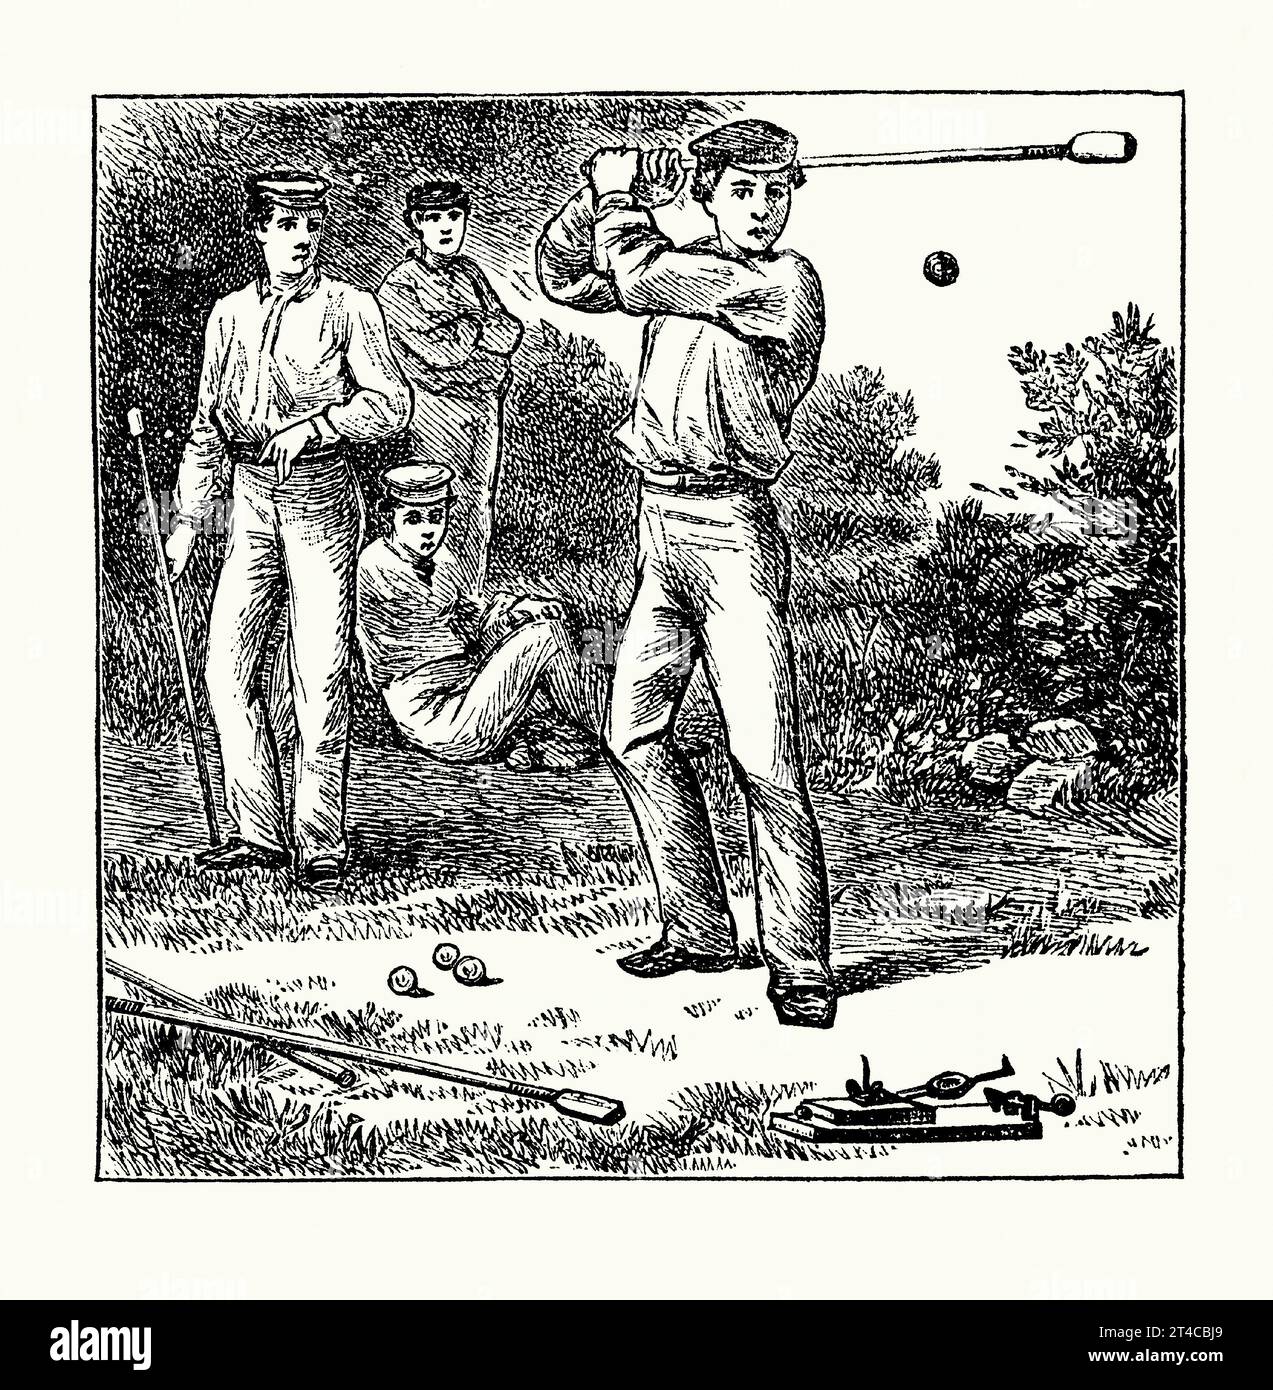 Une ancienne gravure du jeu de « Knurr et sort ». Il est tiré du livre victorien des années 1890 sur les sports, les jeux et les passe-temps. Knurr and Spell (ou Northern Spell, nipsy ou trap ball) est un vieux jeu anglais, autrefois populaire dans les pubs. Le jeu de type golf est originaire du Yorkshire, mais s'est ensuite répandu dans tout le nord de l'Angleterre. Il remonte au début du 14e siècle. Il était populaire aux 18e et 19e siècles. Un piège en bois à levier connu sous le nom de sort jette un knurr, semblable à une balle de golf, dans les airs. Le knurr est frappé par le joueur avec le bâton essayant de le frapper aussi loin que possible. Banque D'Images